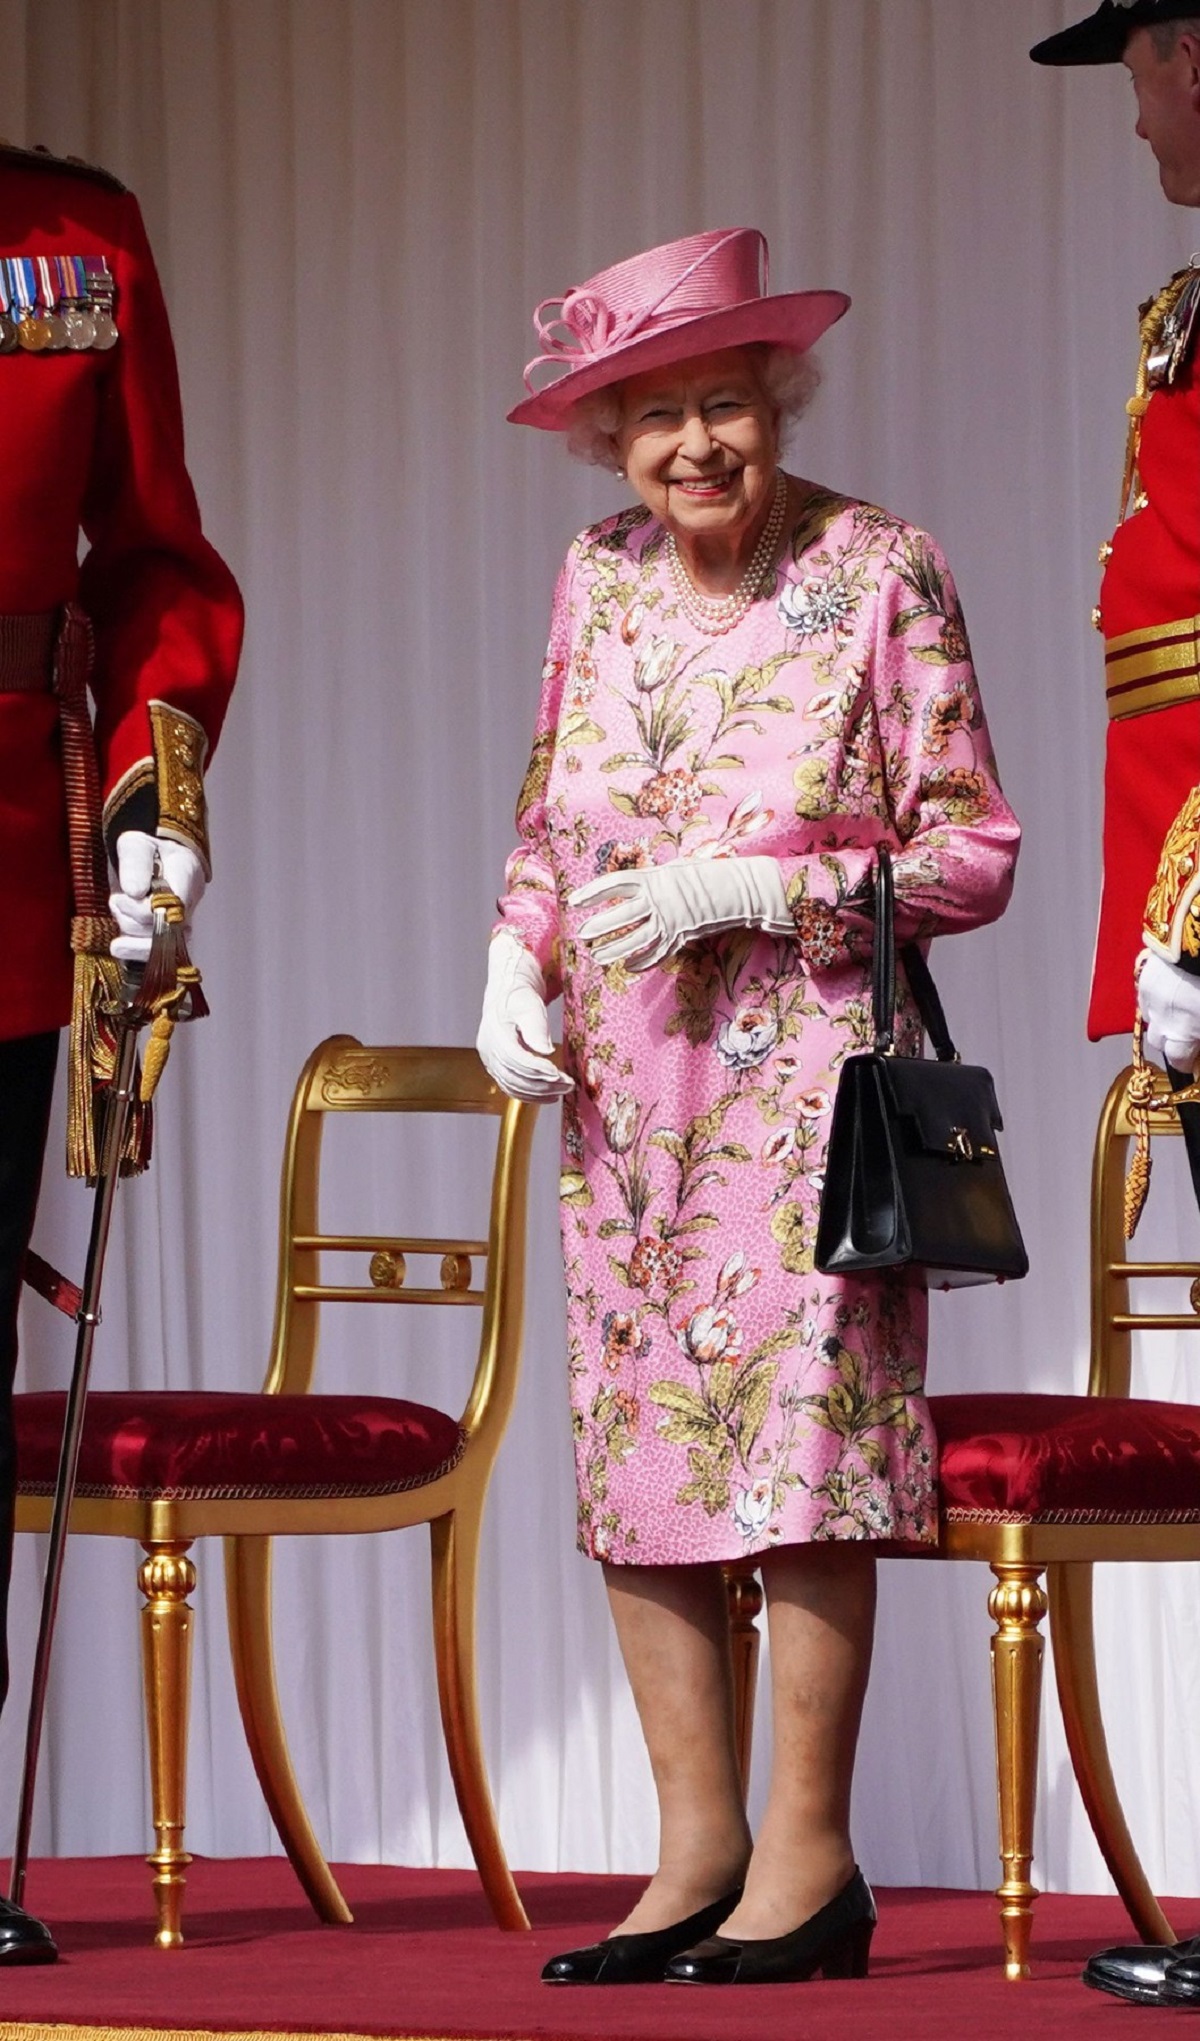 Regina Elisabeta i-a adus un tribut strănepoatei sale și a îmbrăcat o rochie roz cu imprimeu floral și o pălărie de aceeași culoare în timp ce ține în mână o poșetă neagră și zâmbește la cameră înainte să se întâlnească cu Președintele Biden